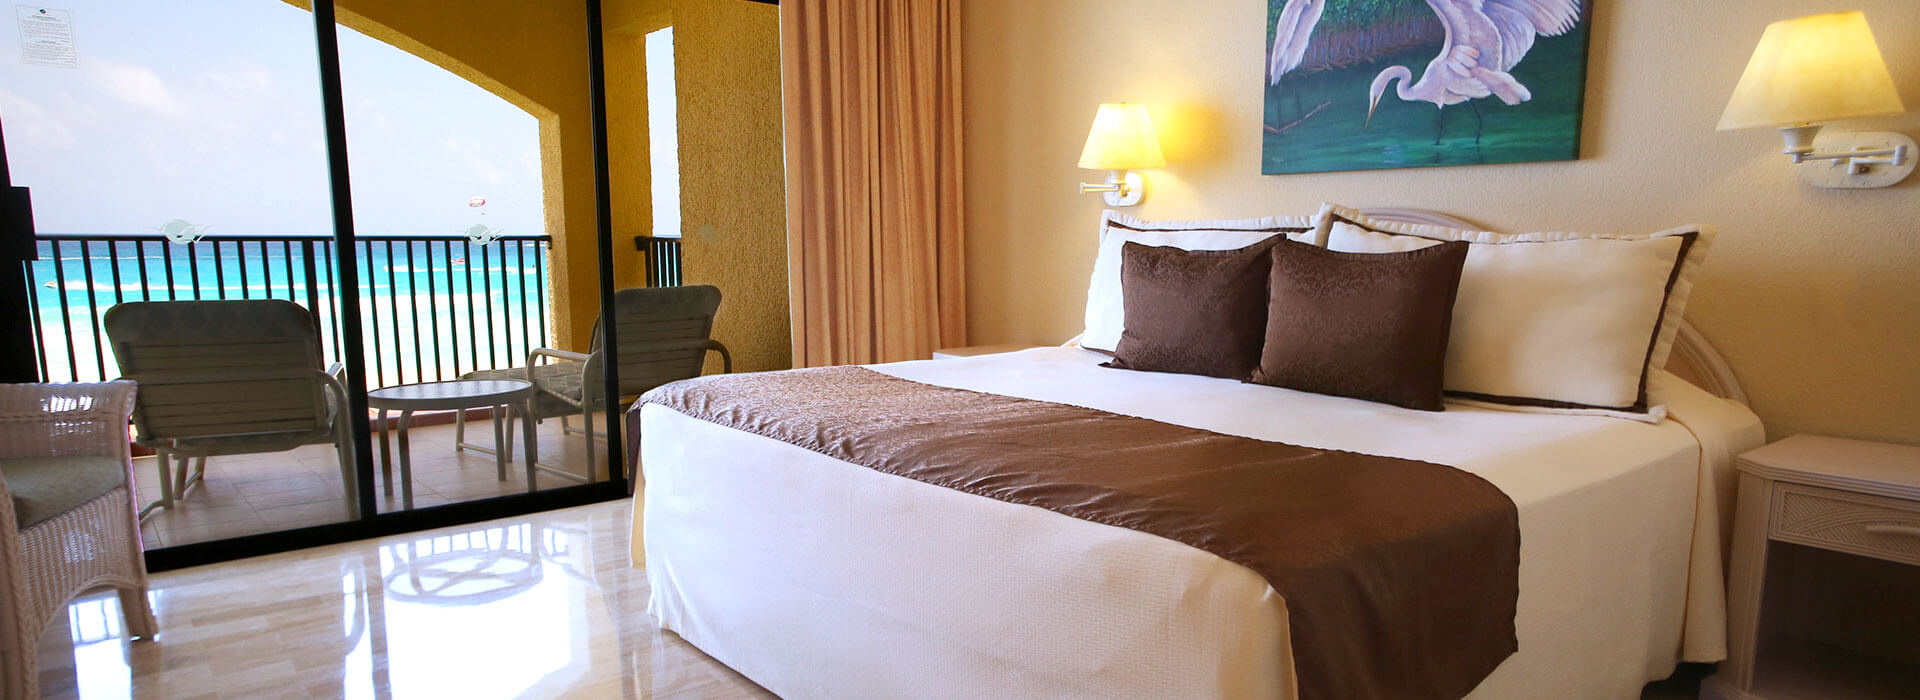 habitación frente al mar en hotel de Cancún